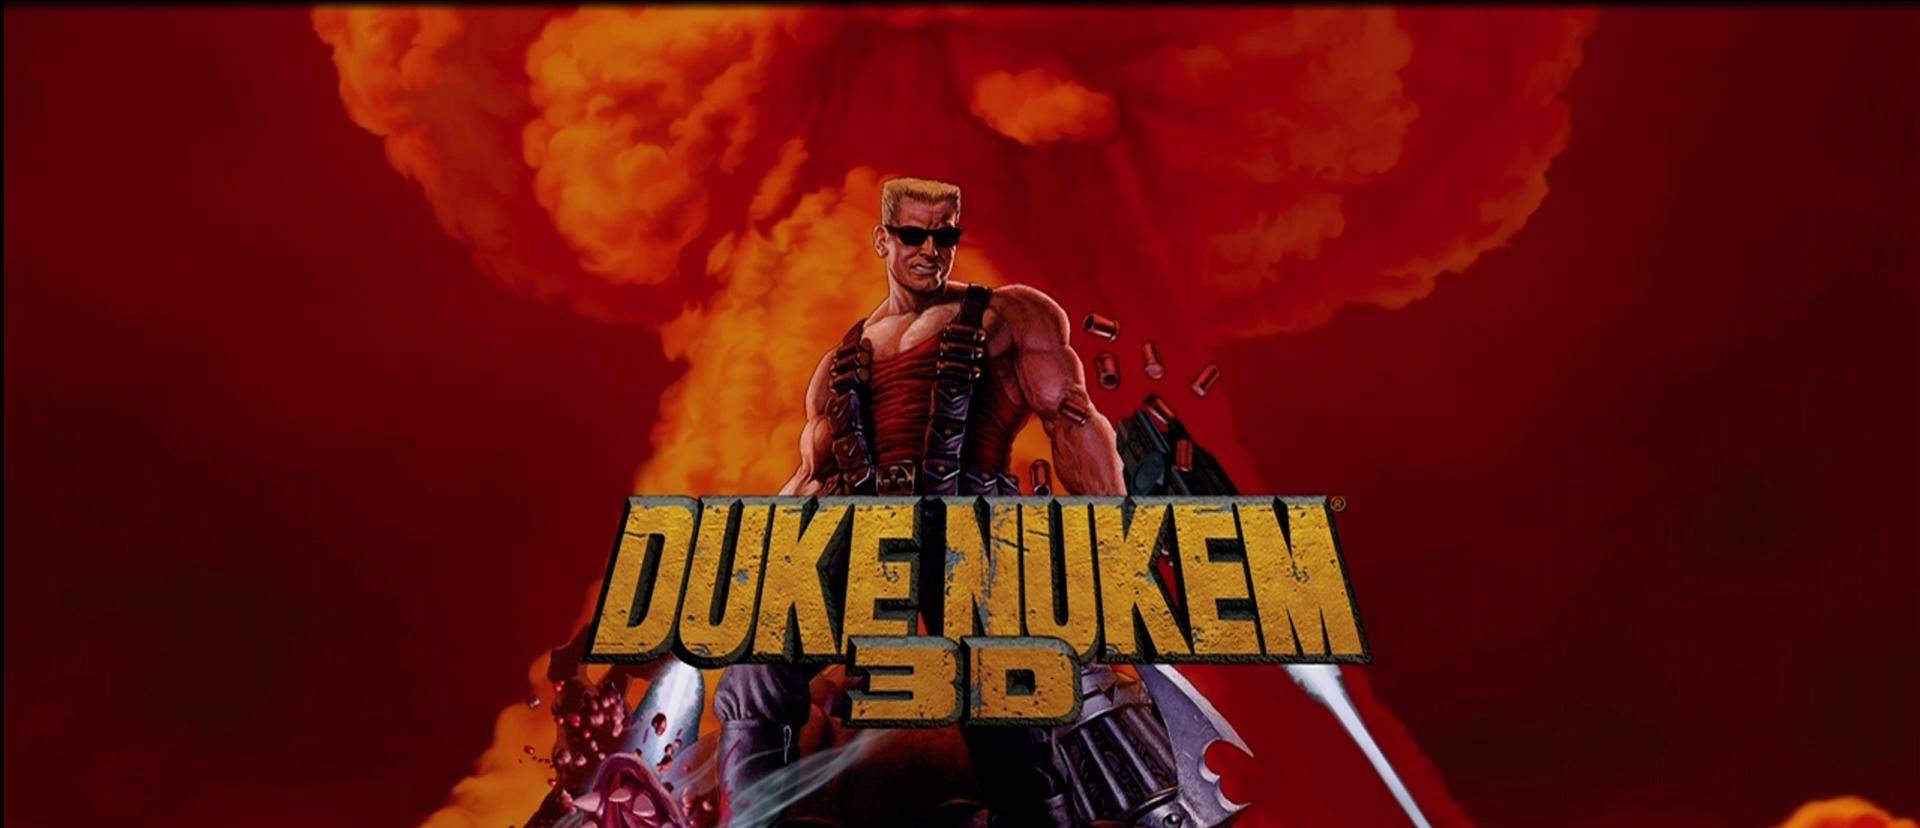 A születésnapos Király - 20. születésnapját ünnepli a Duke Nukem 3D